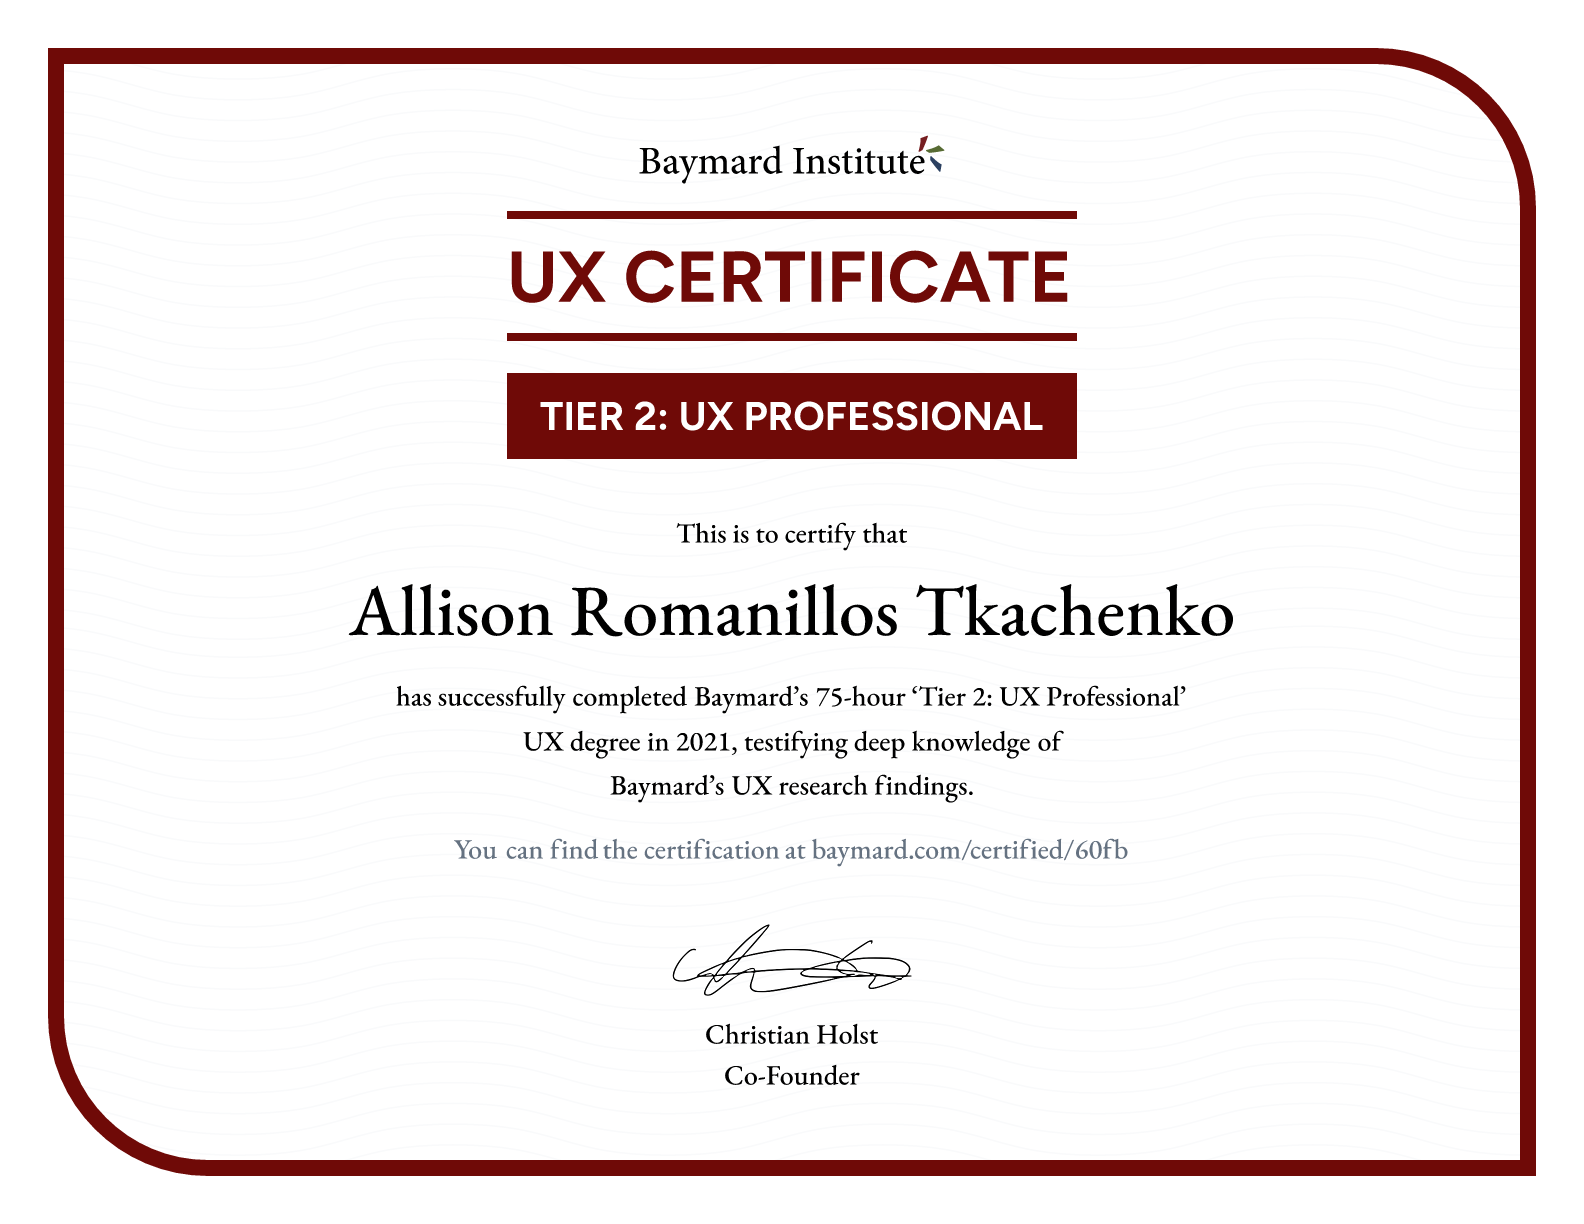 Allison Romanillos Tkachenko’s certificate